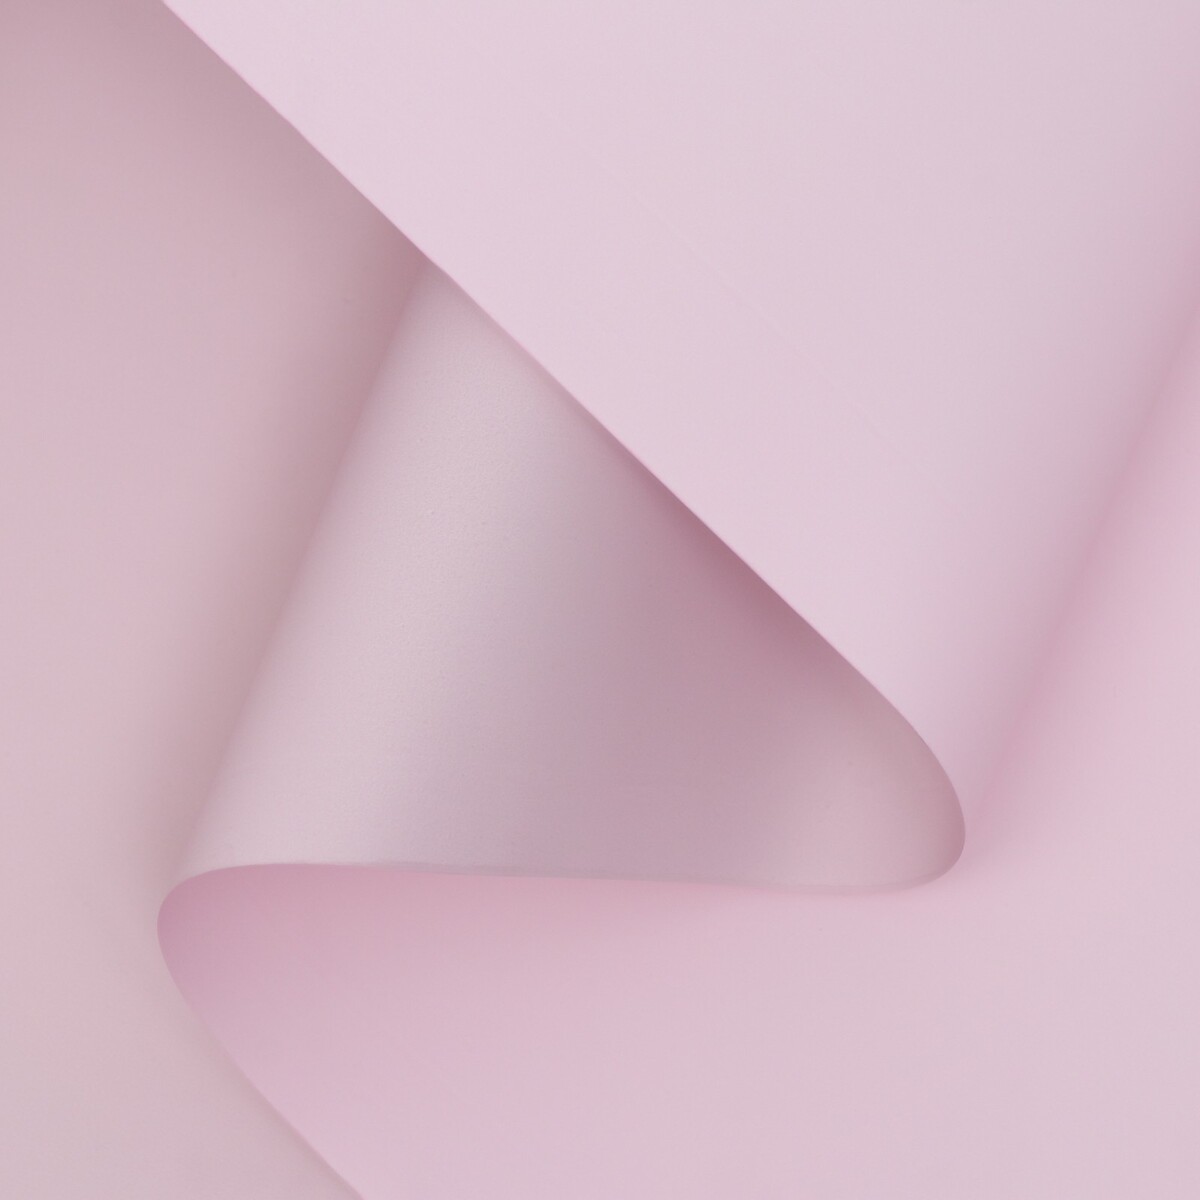 Пленка матовая двухсторонняя , пастельная серия, 65 мкм пастельный, розовый, 0,5 x 10 м пленка для ов матовая ы с каймой 58х58см розовый